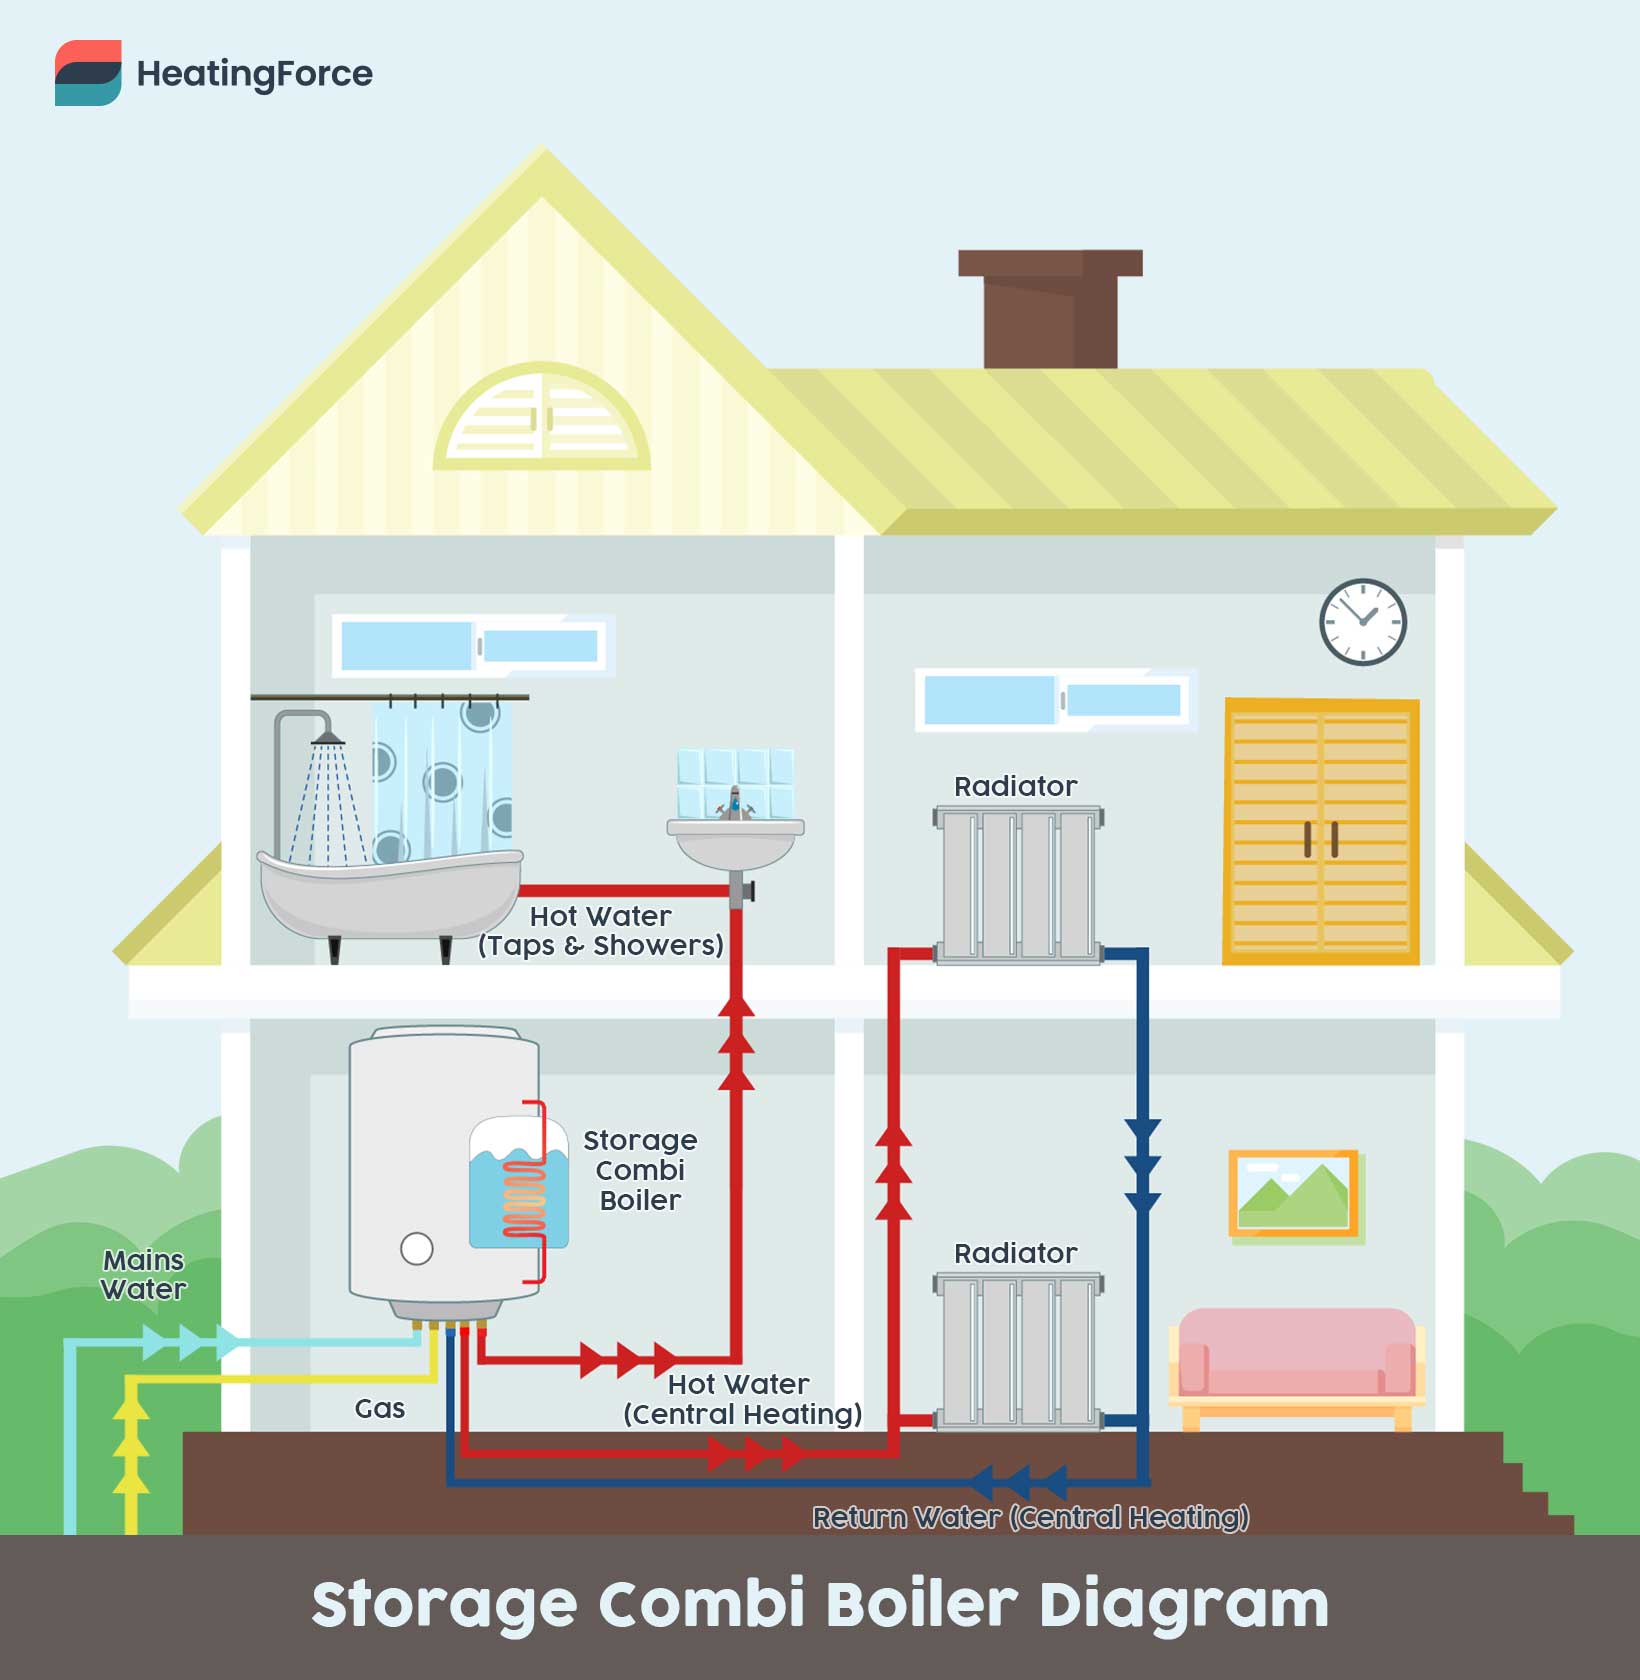 Storage combi boiler diagram